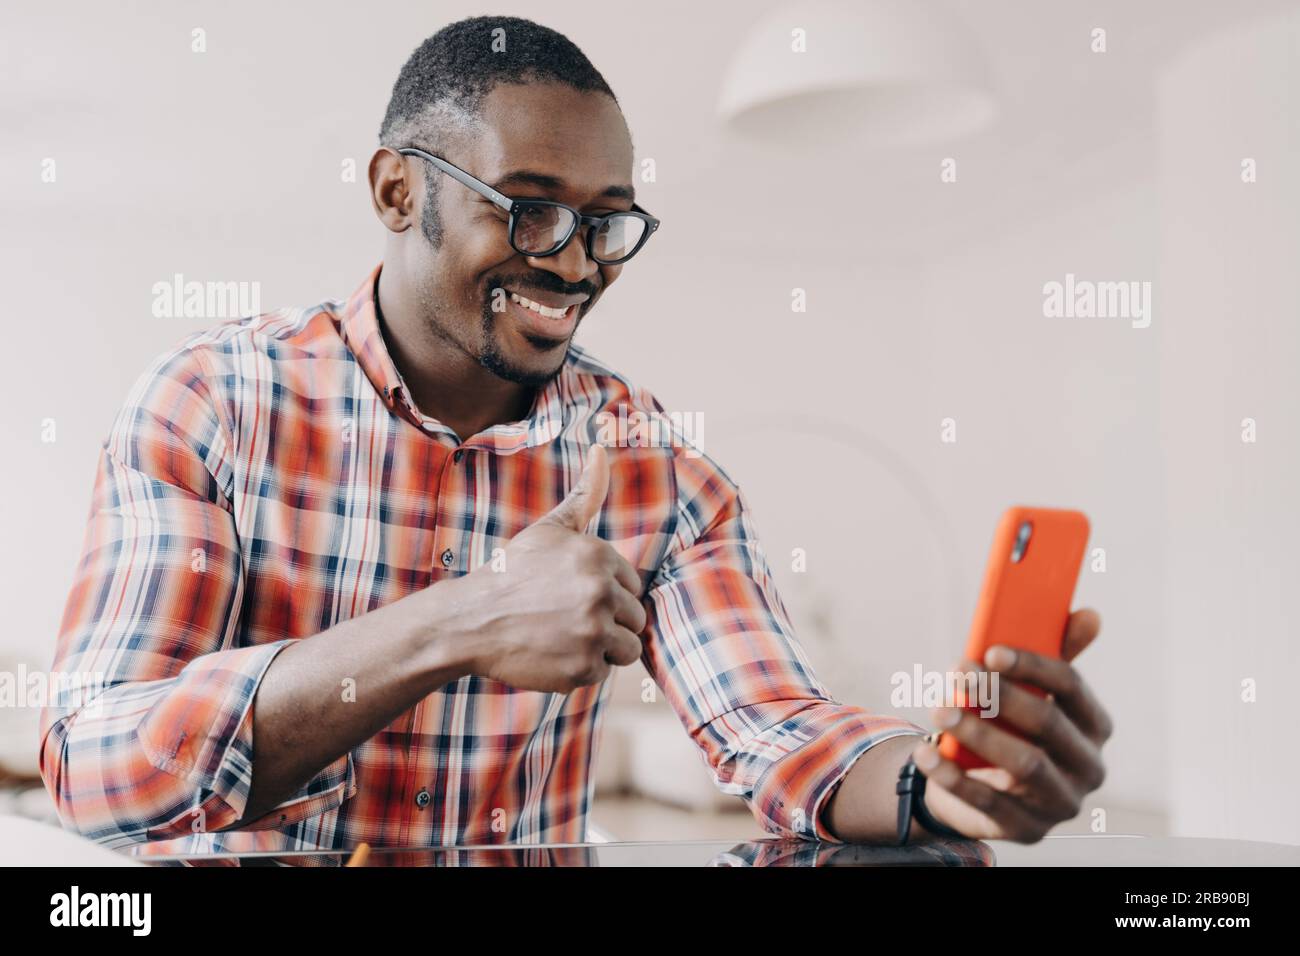 Un uomo afro-americano che mostra il gesto della mano con il pollice in alto, tiene lo smartphone, chatta con una videochiamata. Un ragazzo nero sorridente in occhiali che guarda il telefono Foto Stock